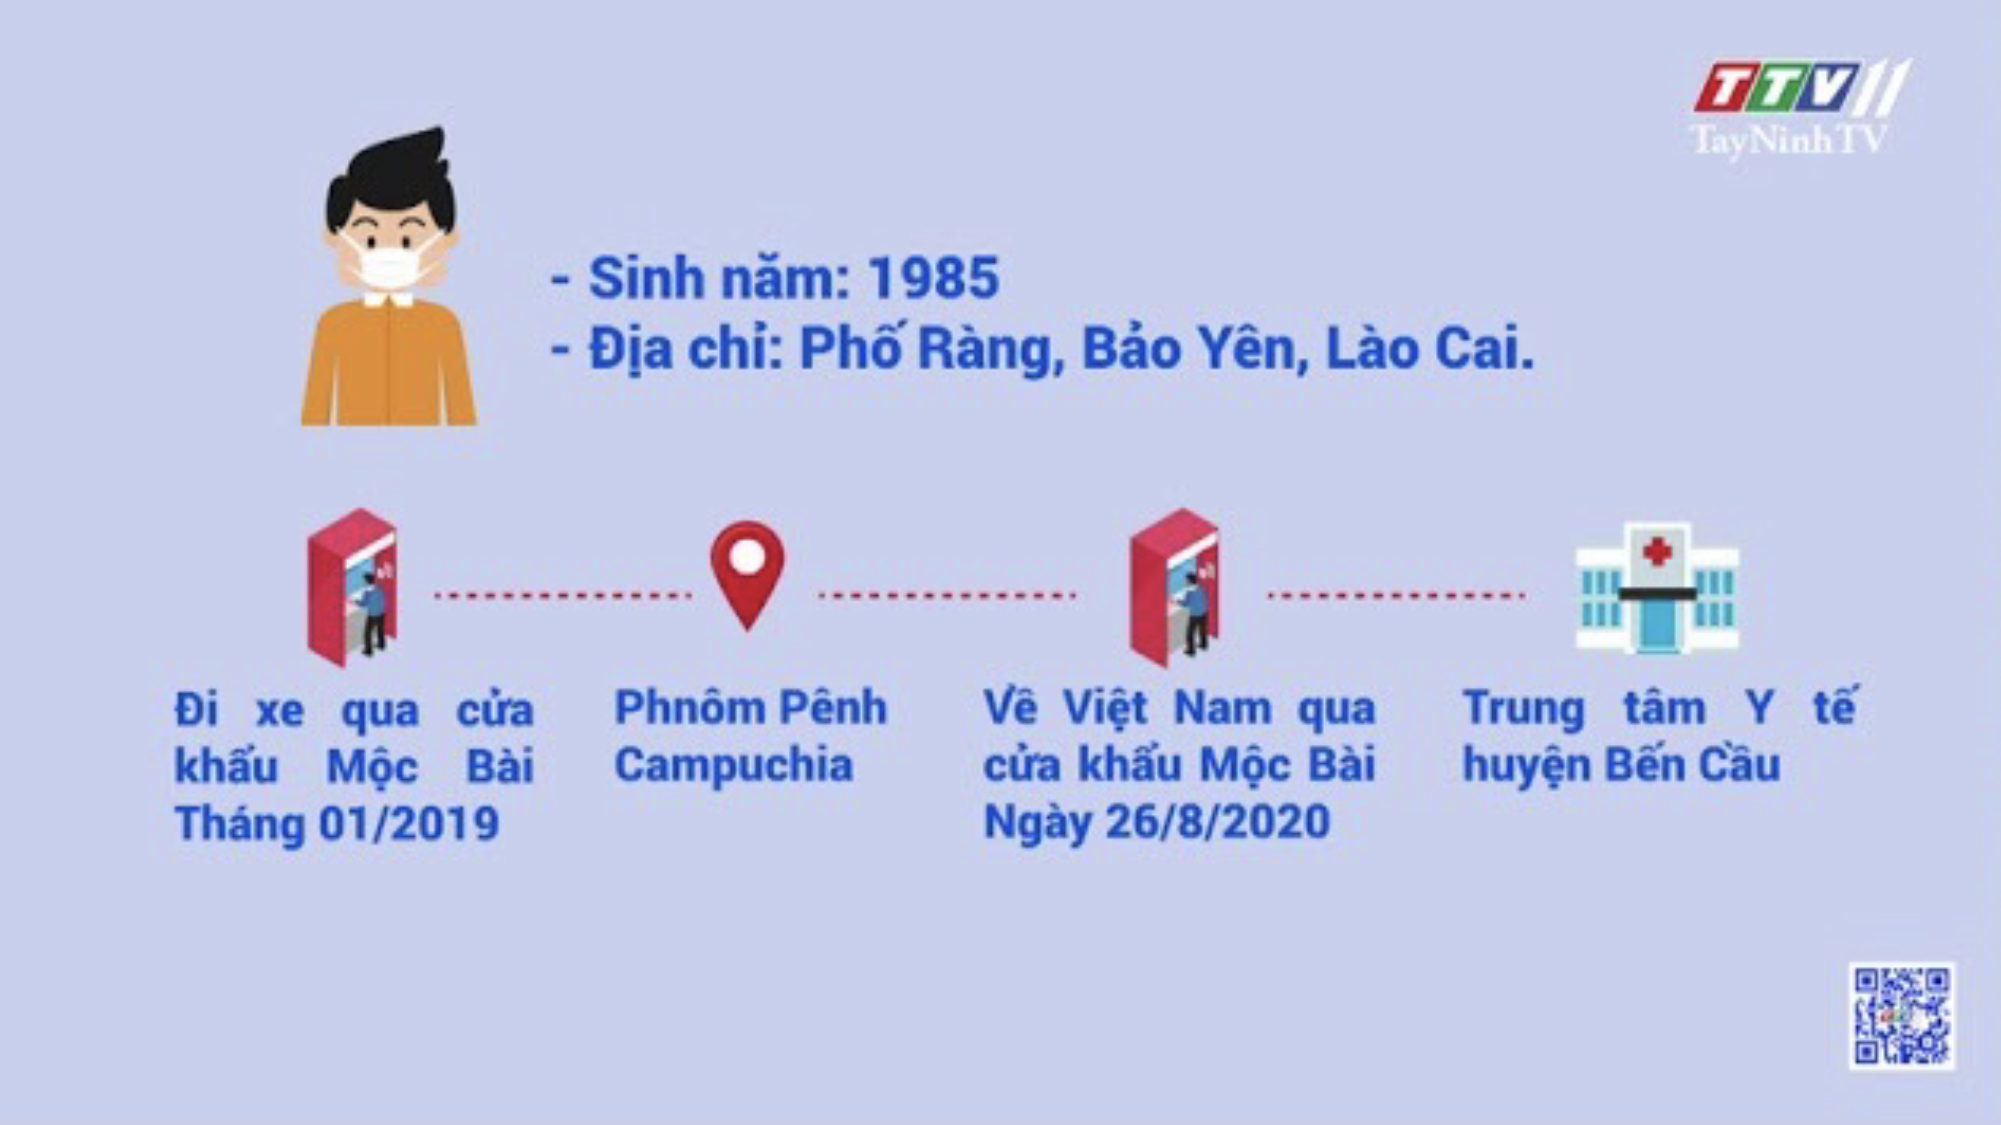 Tây Ninh: 3 ca mắc Covid-19 được cách ly ngay khi nhập cảnh | Thông tin dịch Covid-19 | TayNinhTV